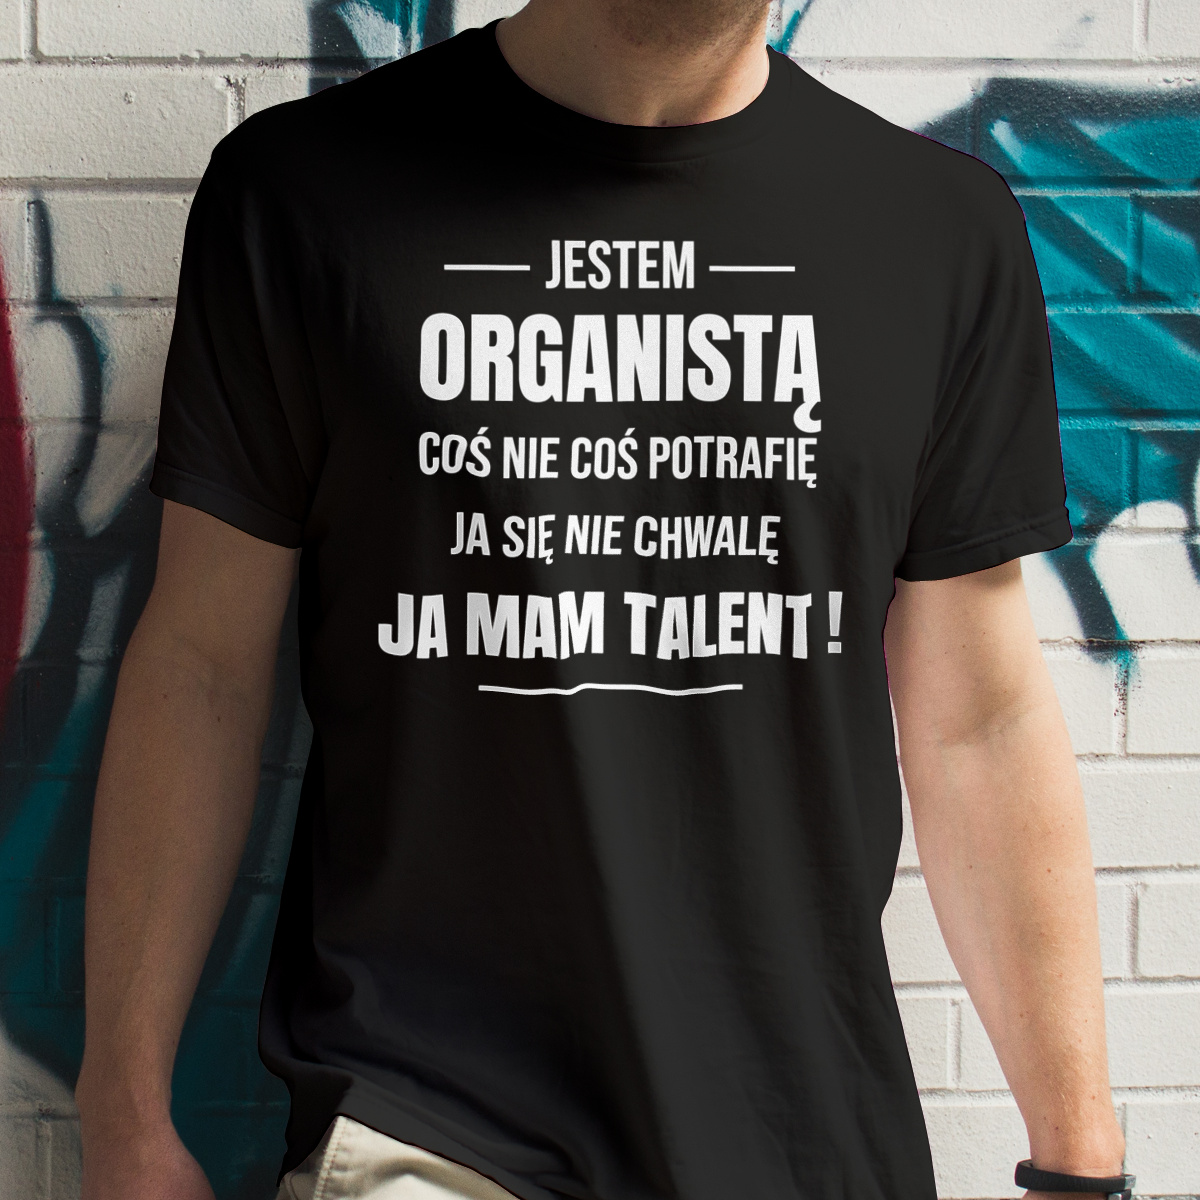 Coś Nie Coś Potrafię Mam Talent Organista - Męska Koszulka Czarna